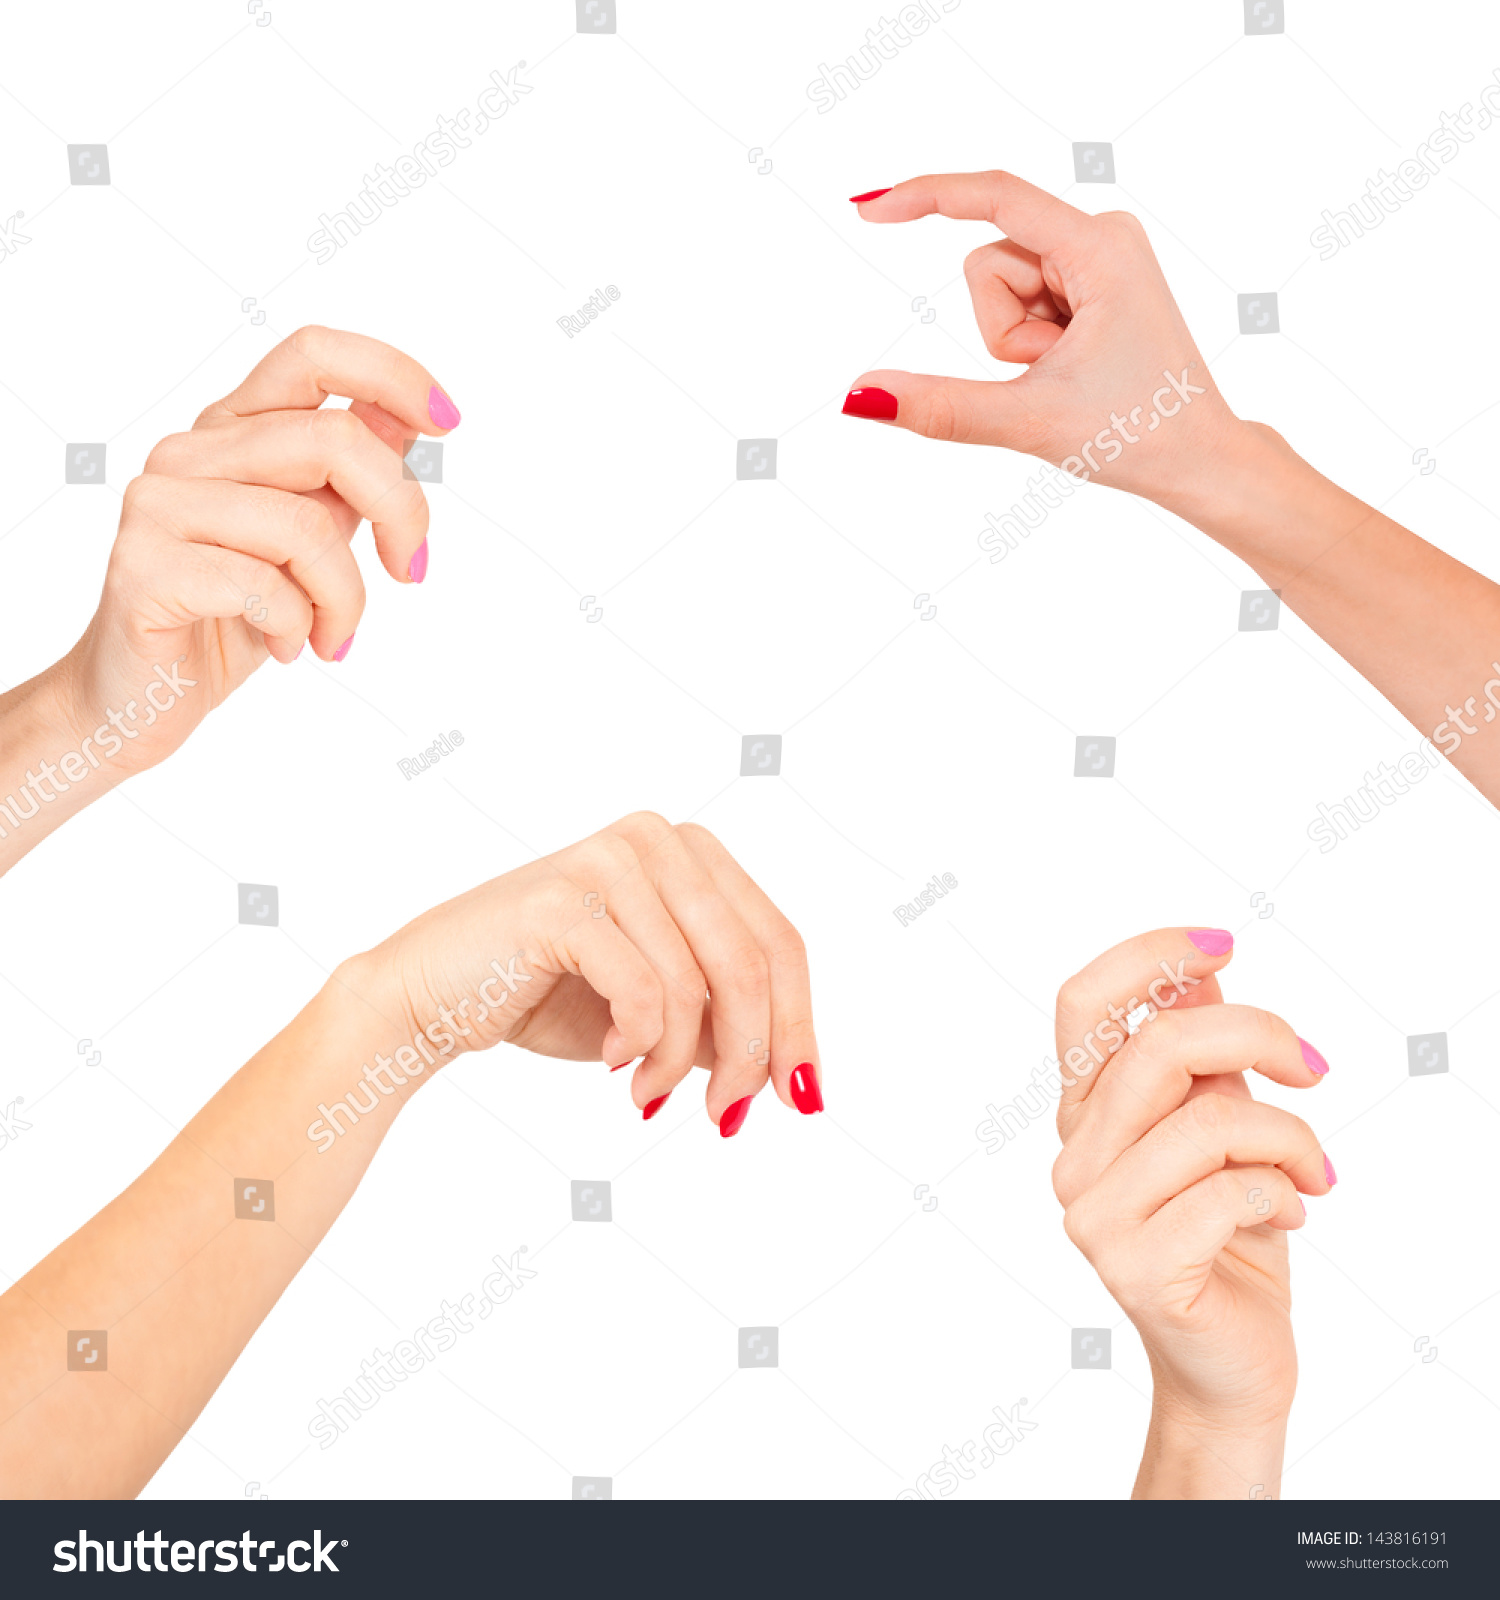 Women Hand Stock Photo 143816191 : Shutterstock